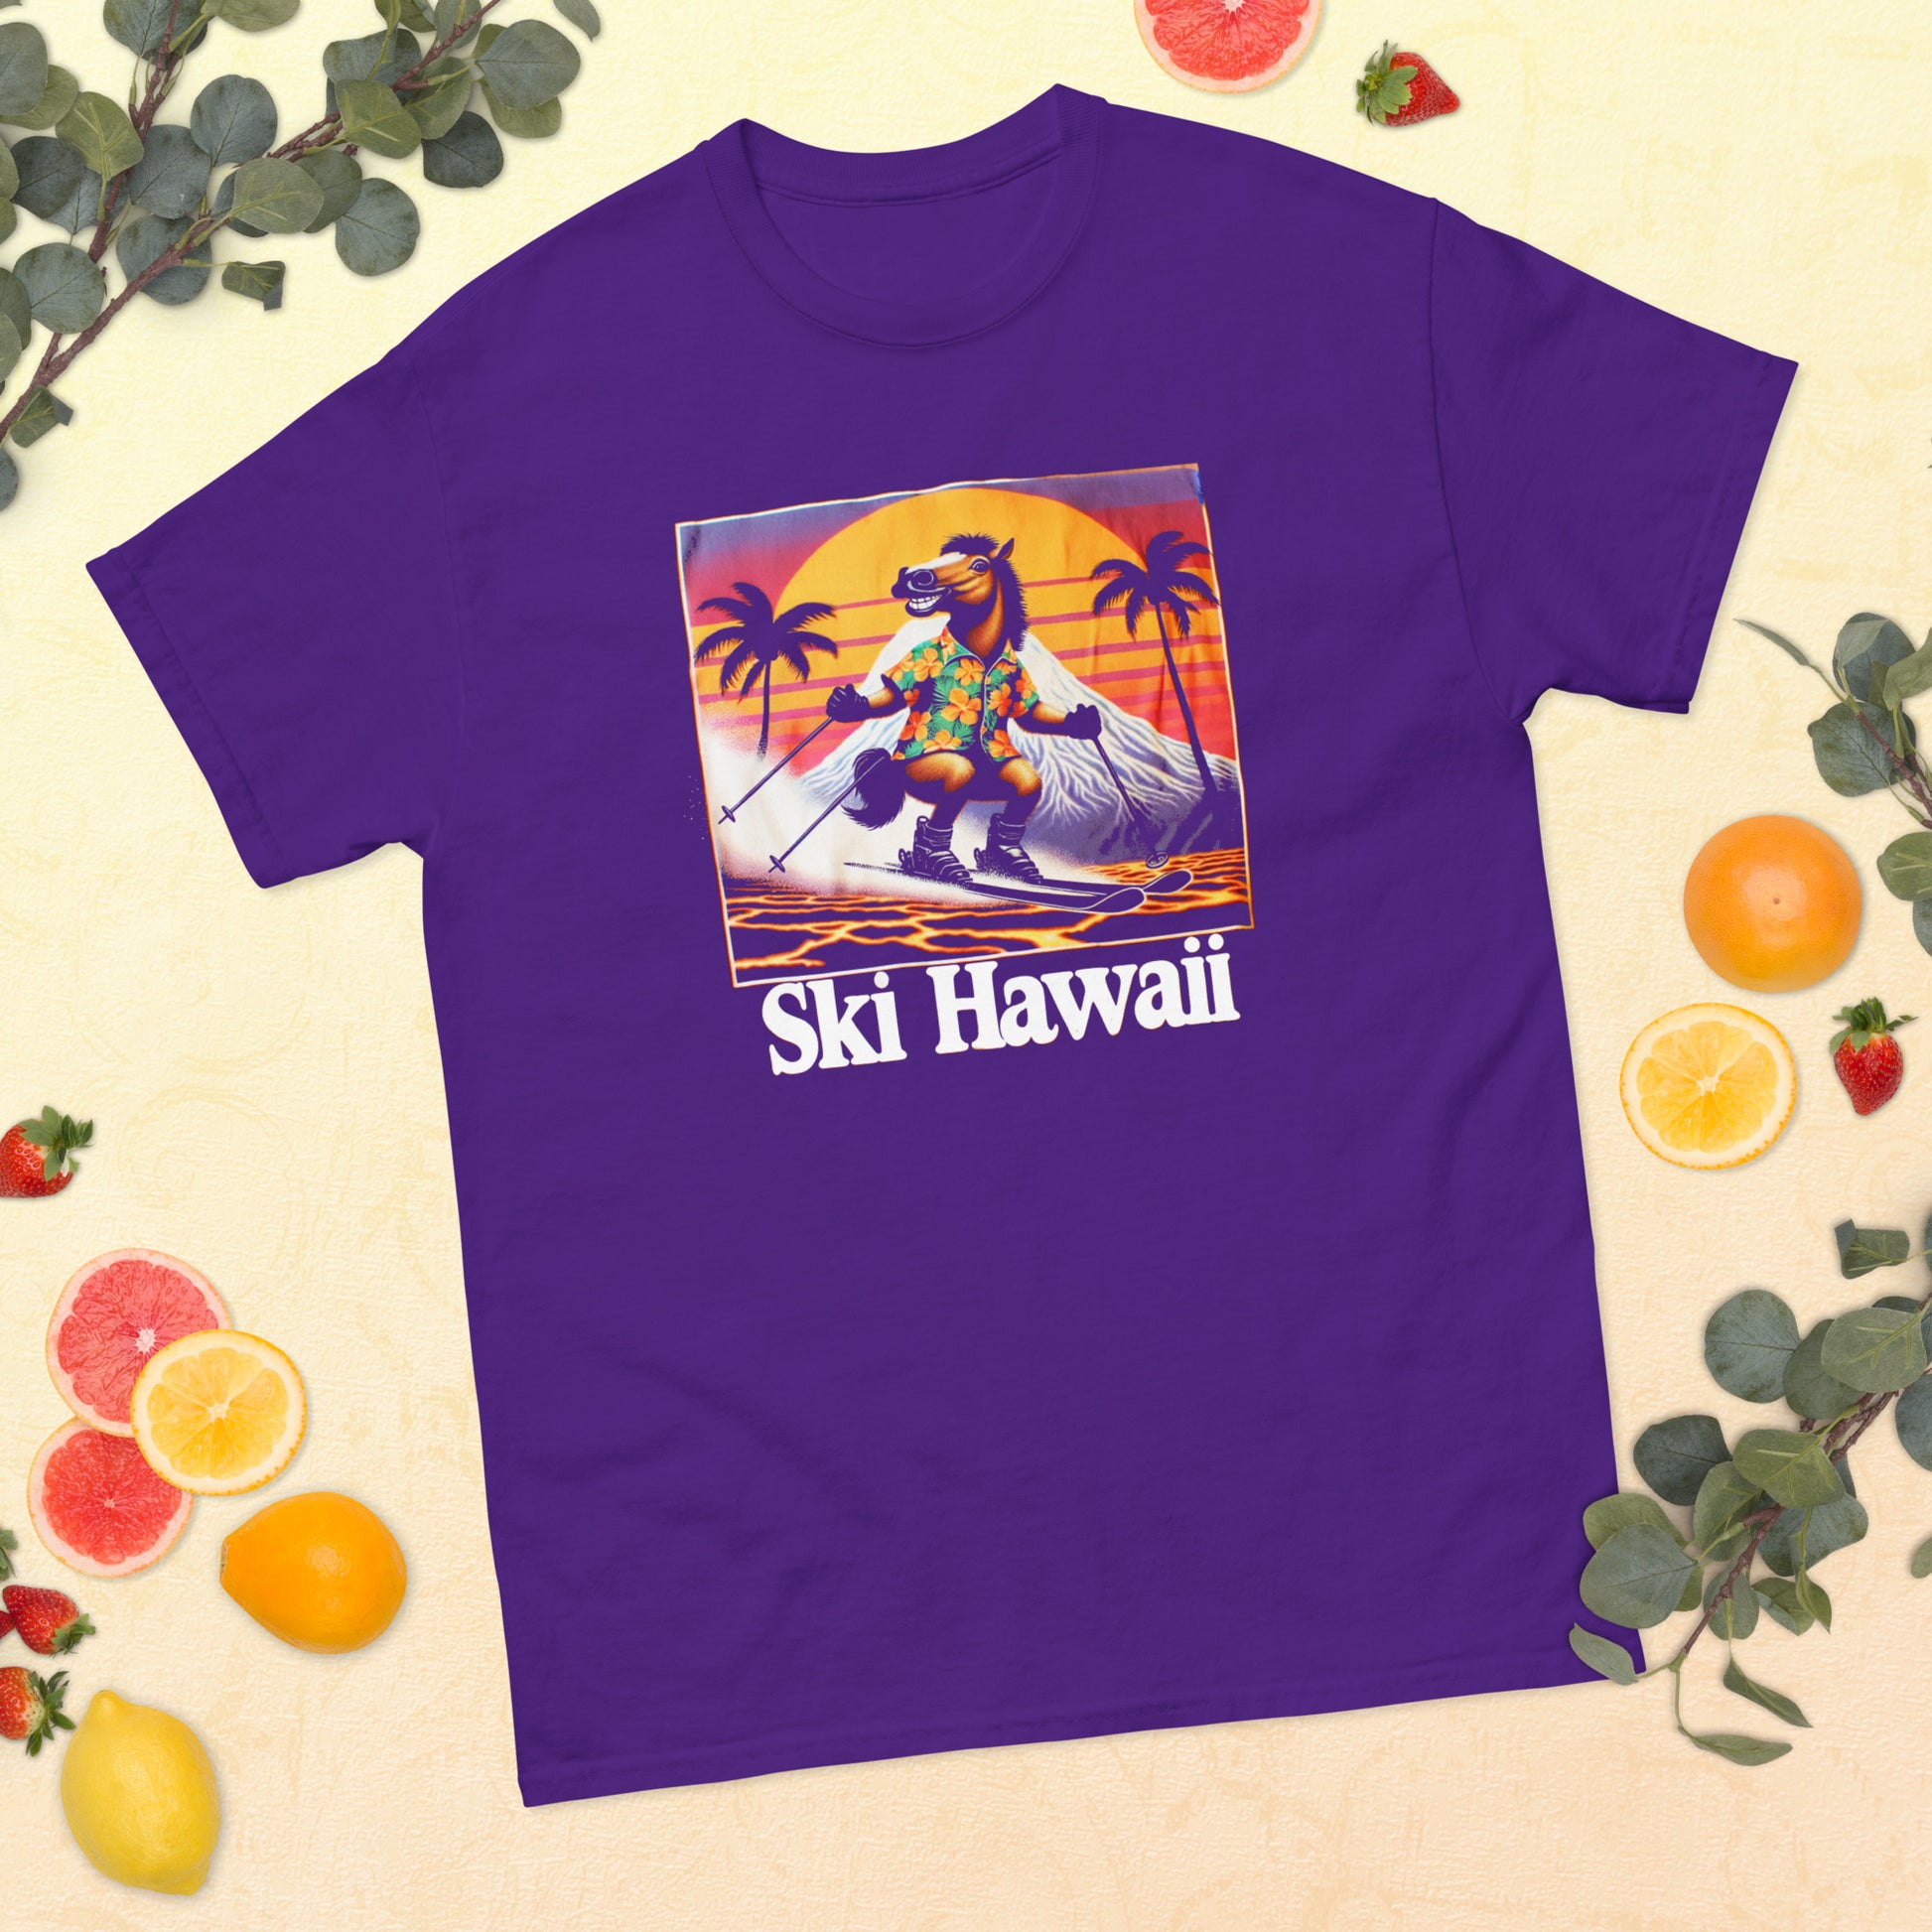 Ski Hawaii horse skiing printed t-shirt by Whistler Shirts